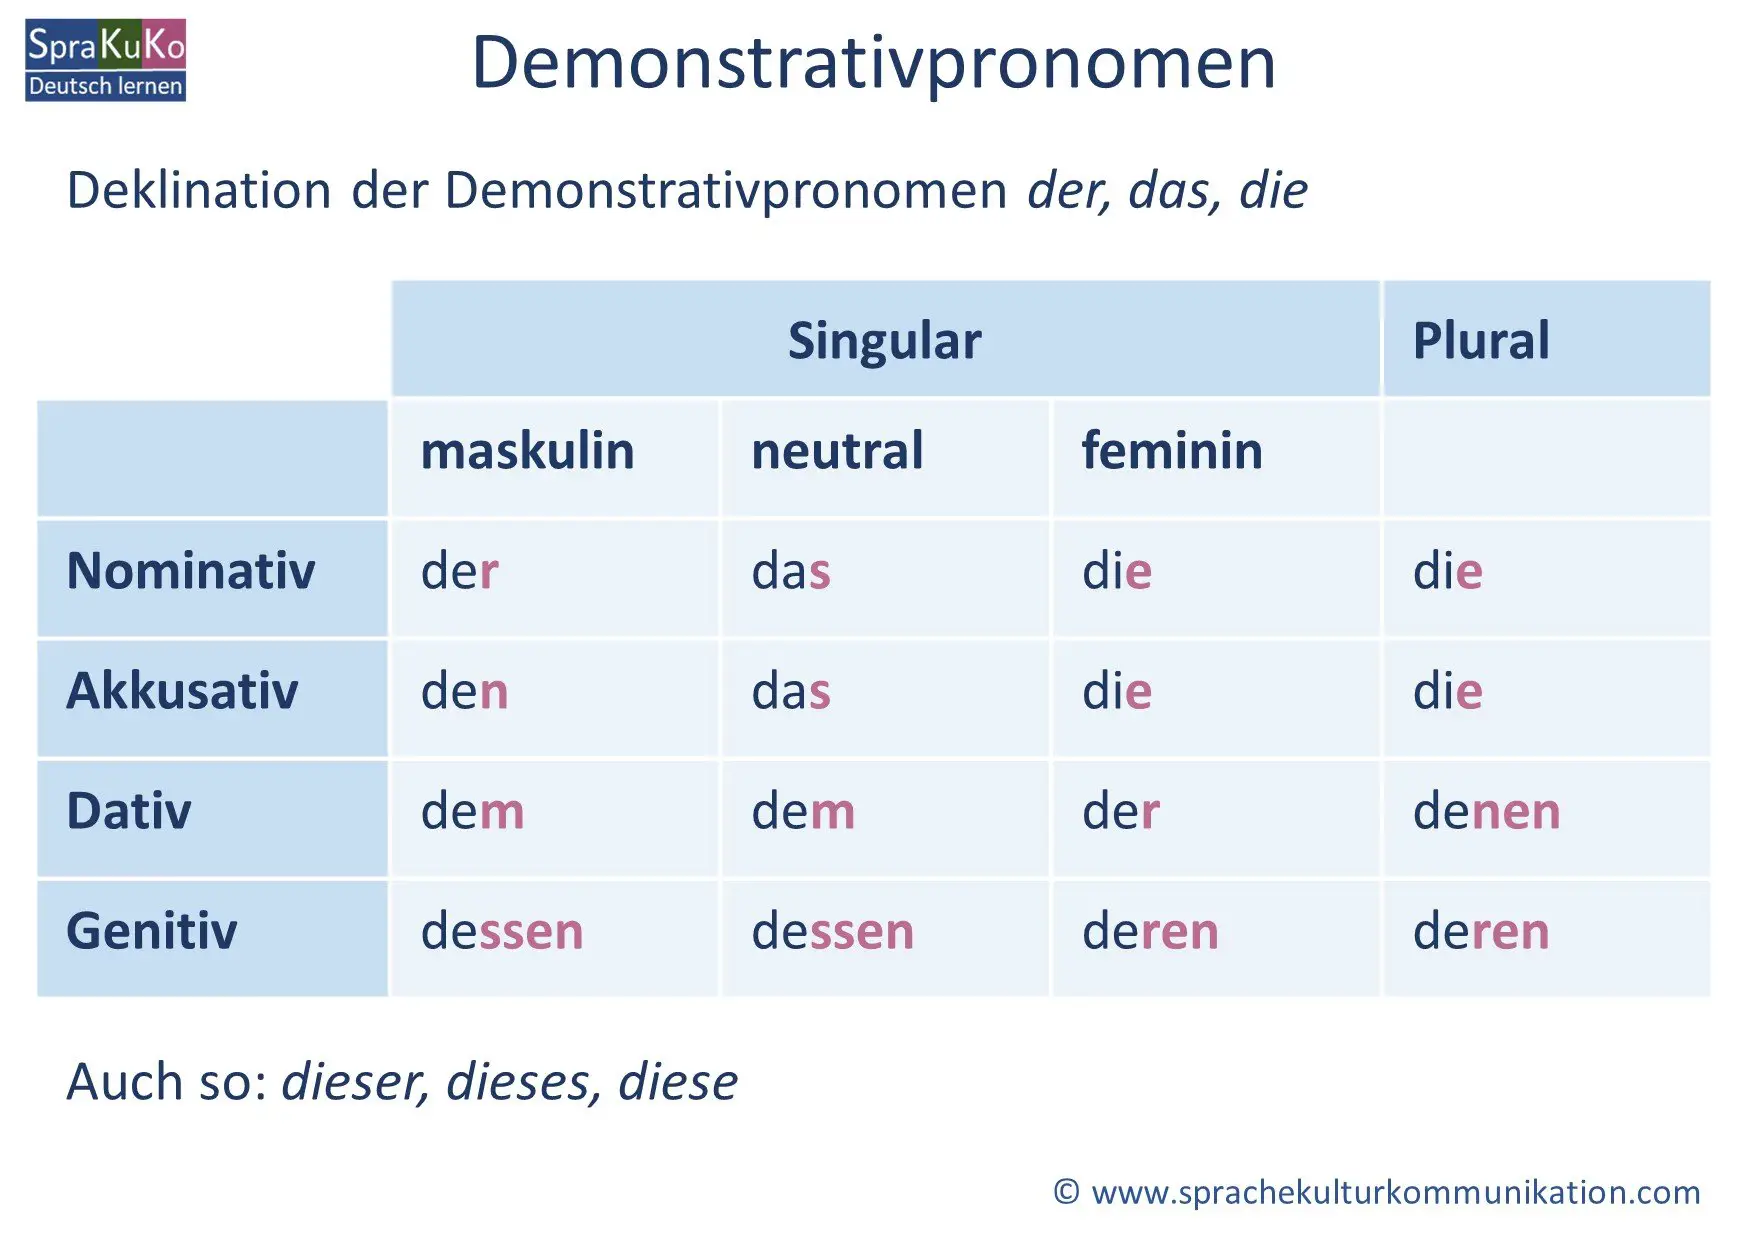 Demonstrativpronomen: Definition, Beispiele und Übungen - Sprakuko - Deutsc...